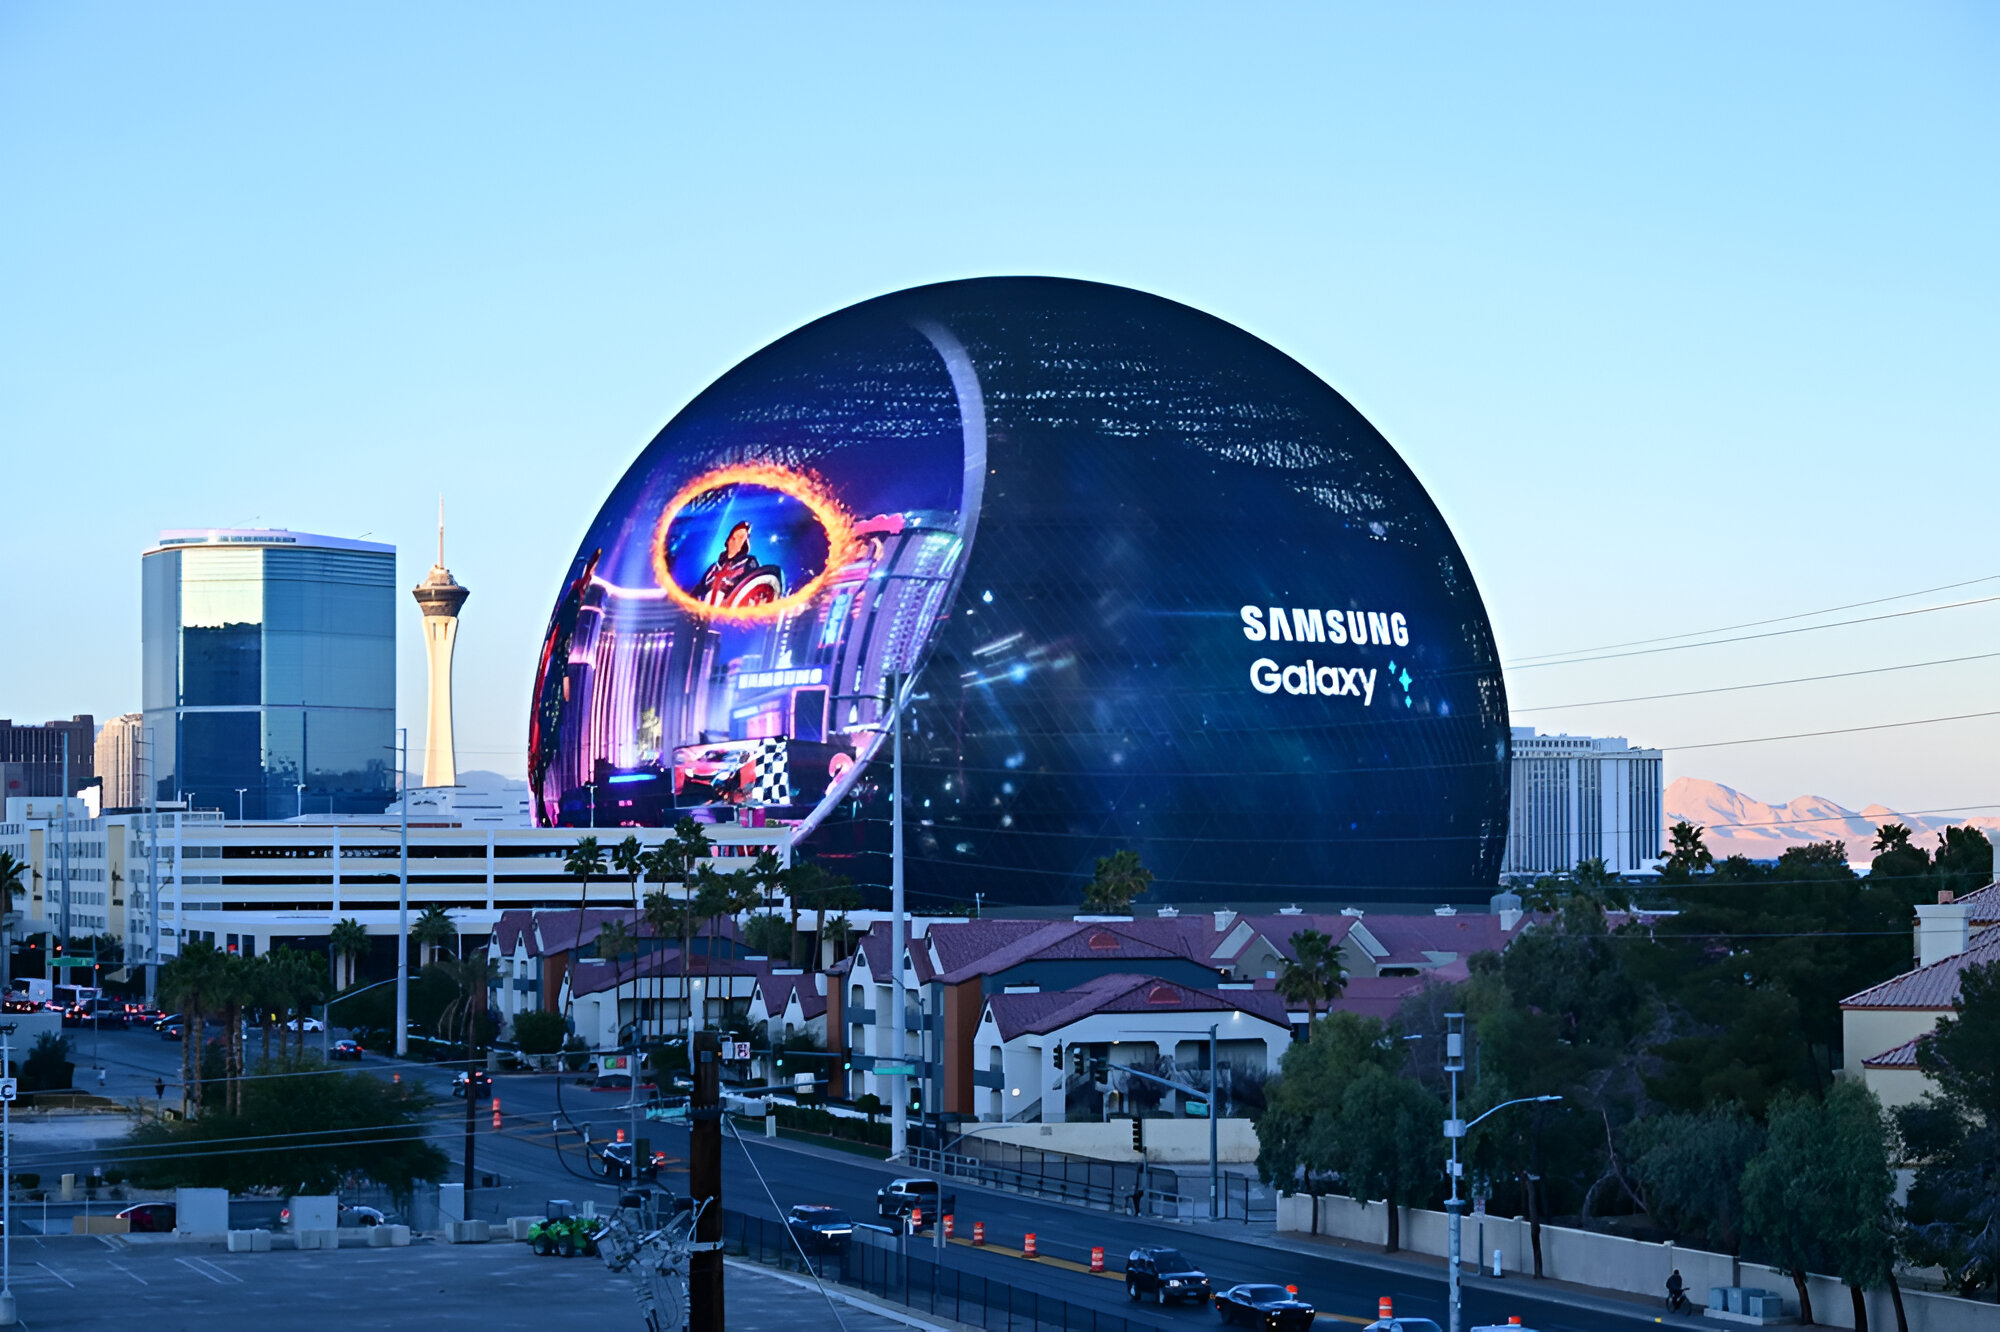 Zdjęcie współczesnej panoramy miejskiej z dominującym sferycznym budynkiem z reklamą Samsung Galaxy, w tle widoczne są góry i wieża obserwacyjna.